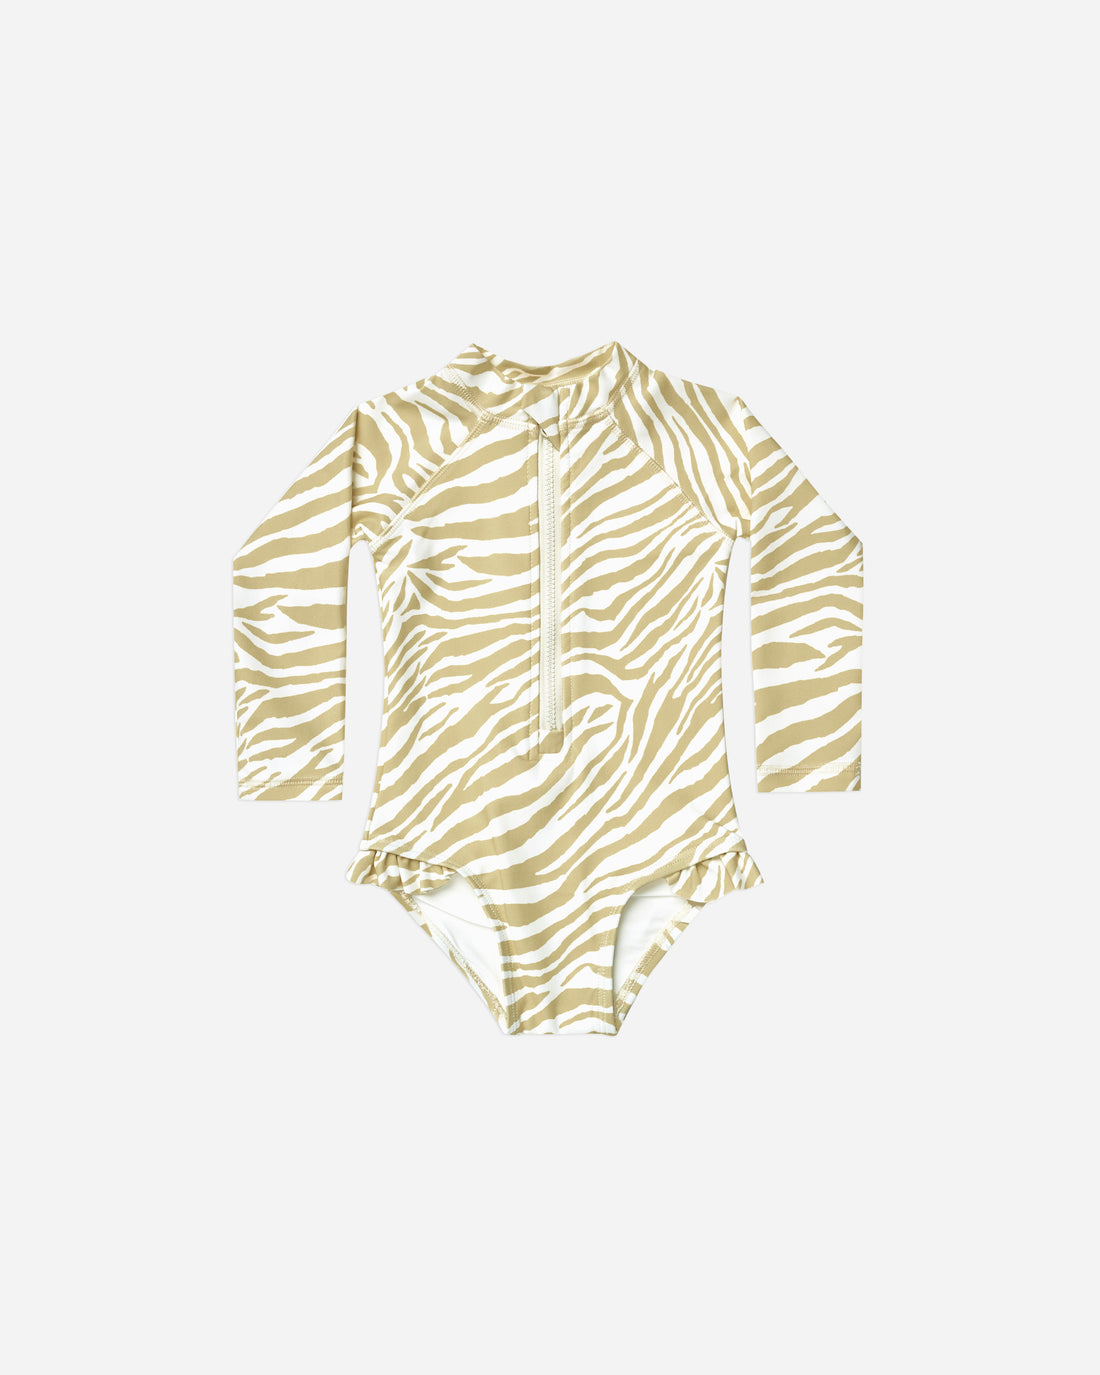 Zebra Girl's Swimsuit